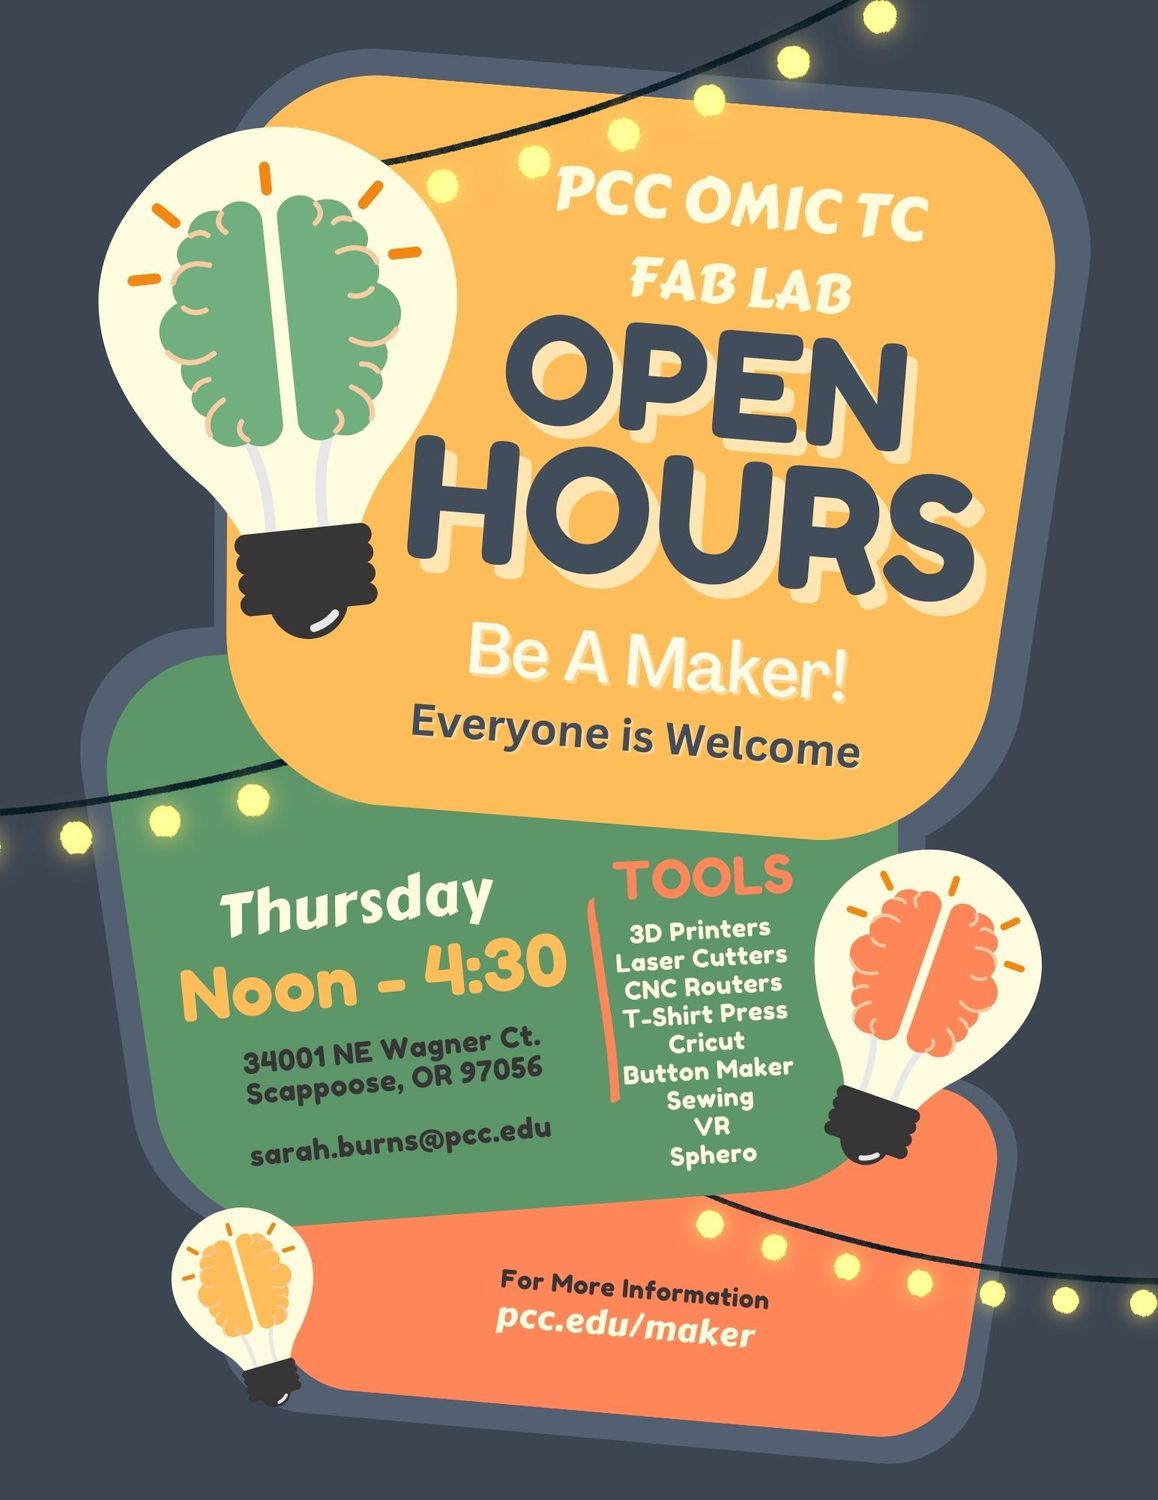 PCC OMIC TC Fab Lab Open Hours